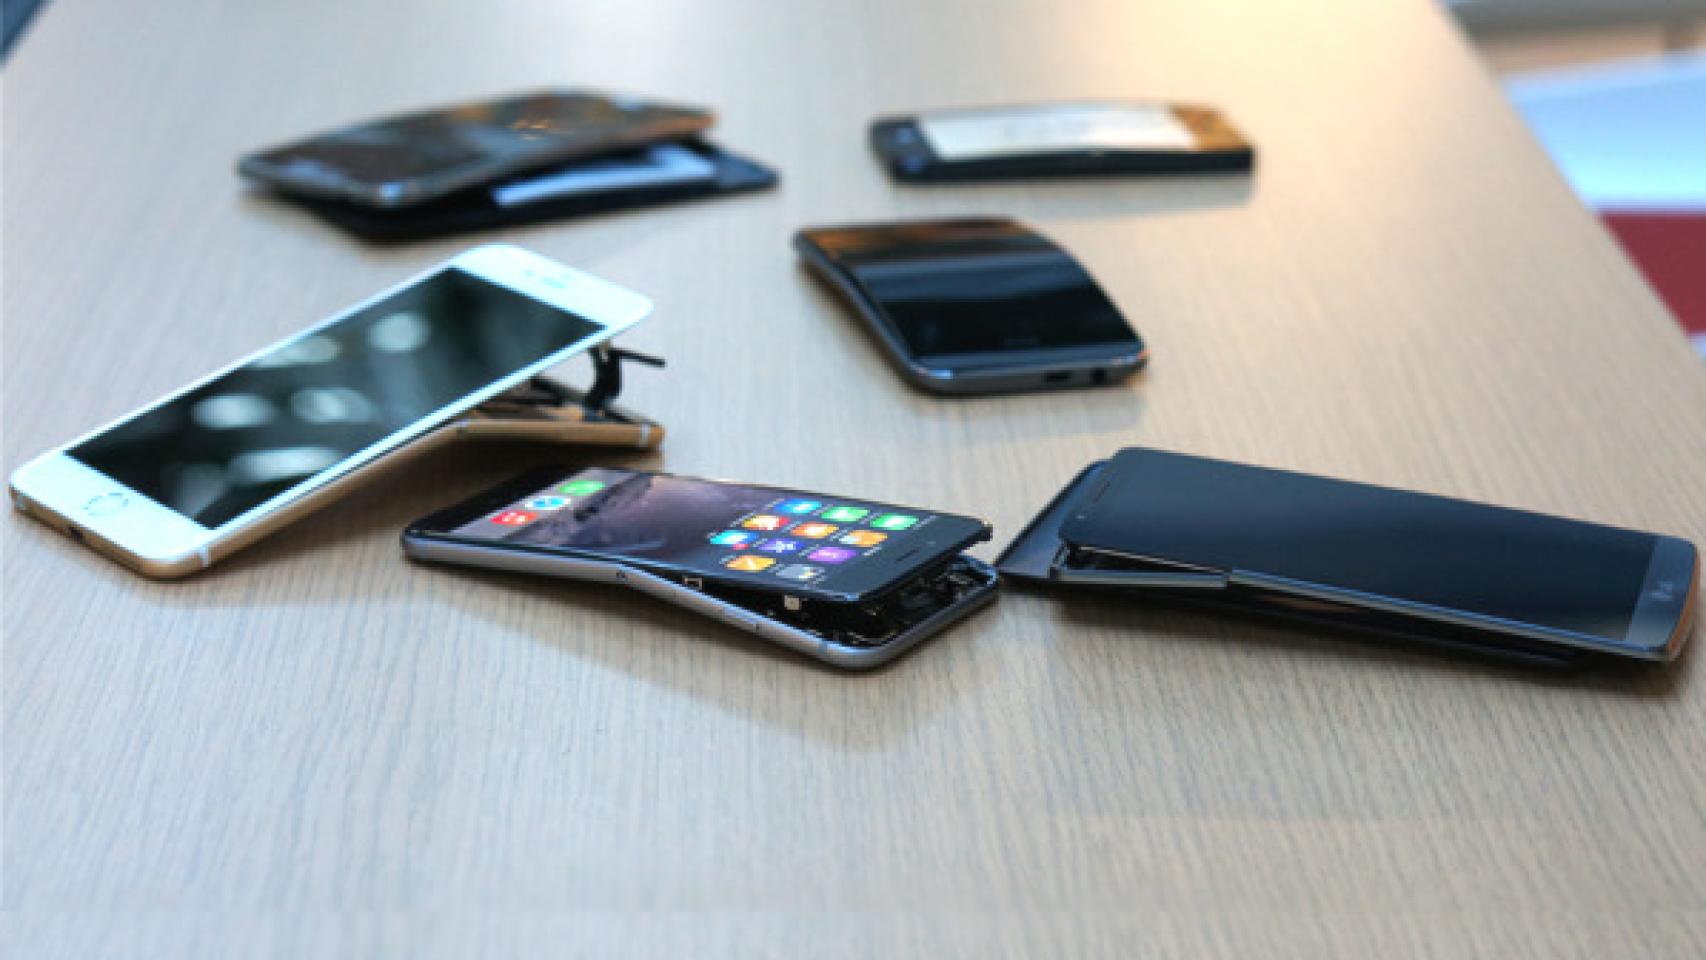 Los móviles de gama alta Android también se doblan, pero menos que el iPhone 6